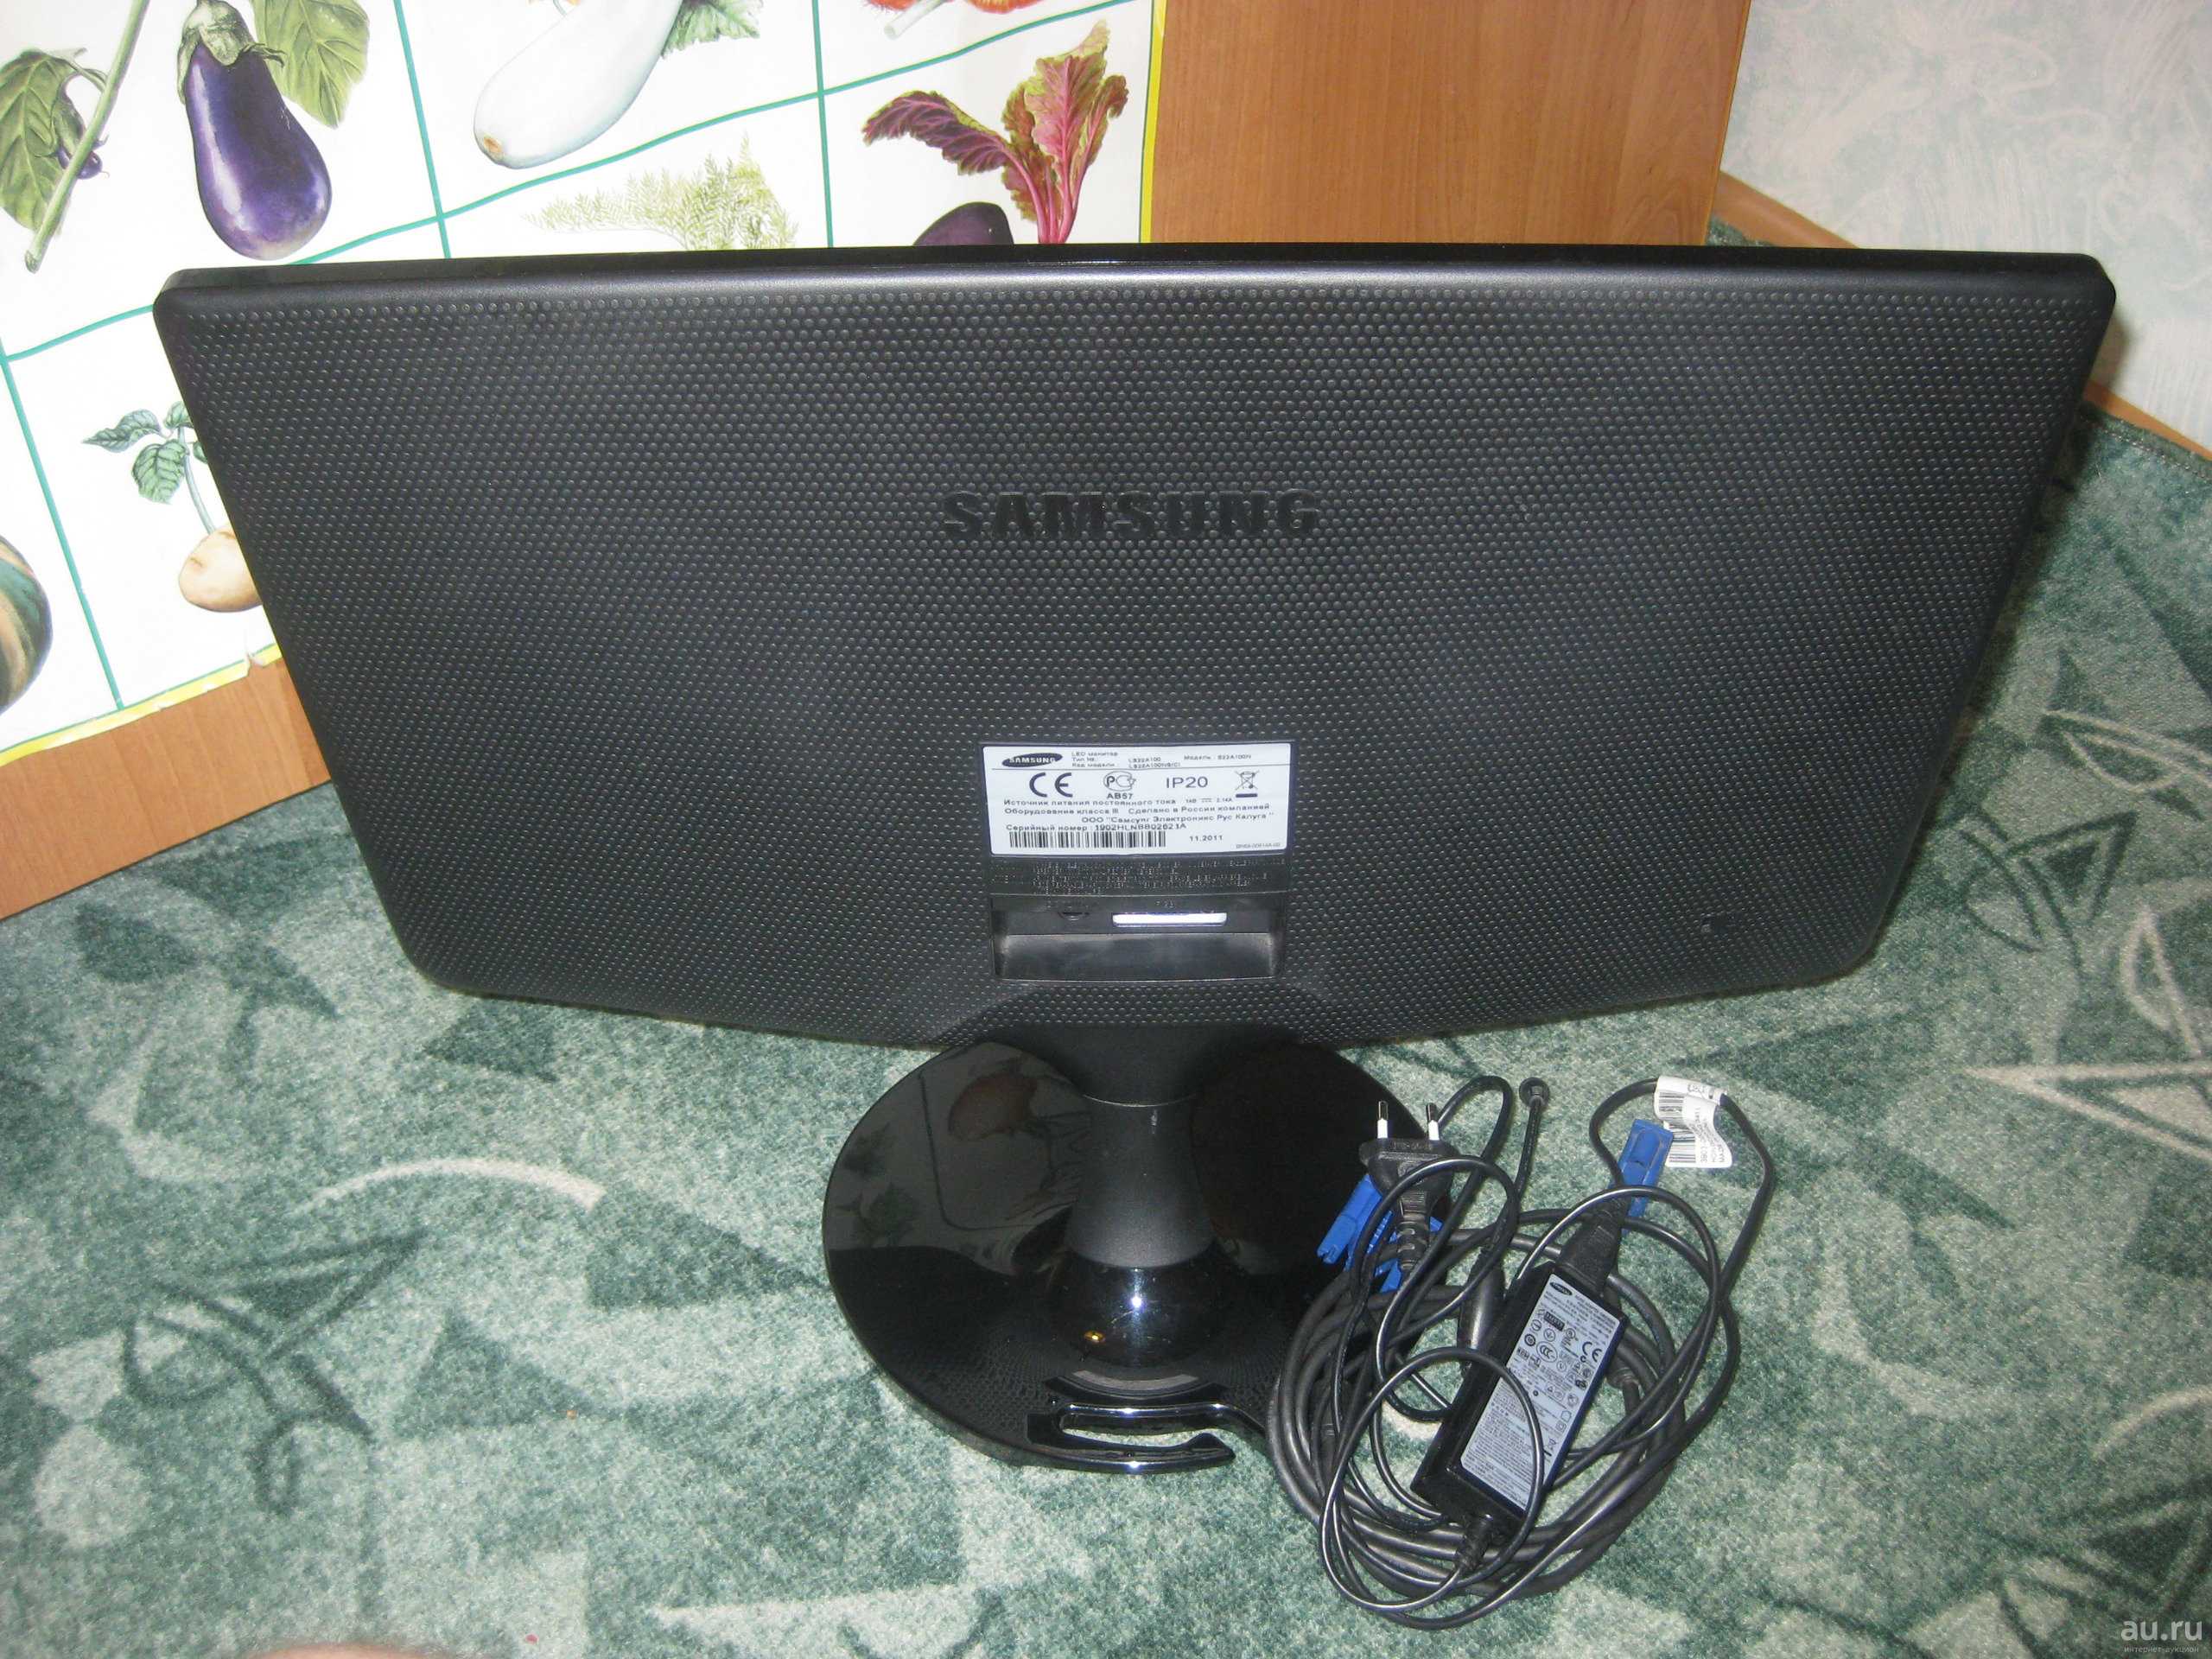 Жк монитор 18.5" samsung s19b150n — купить, цена и характеристики, отзывы